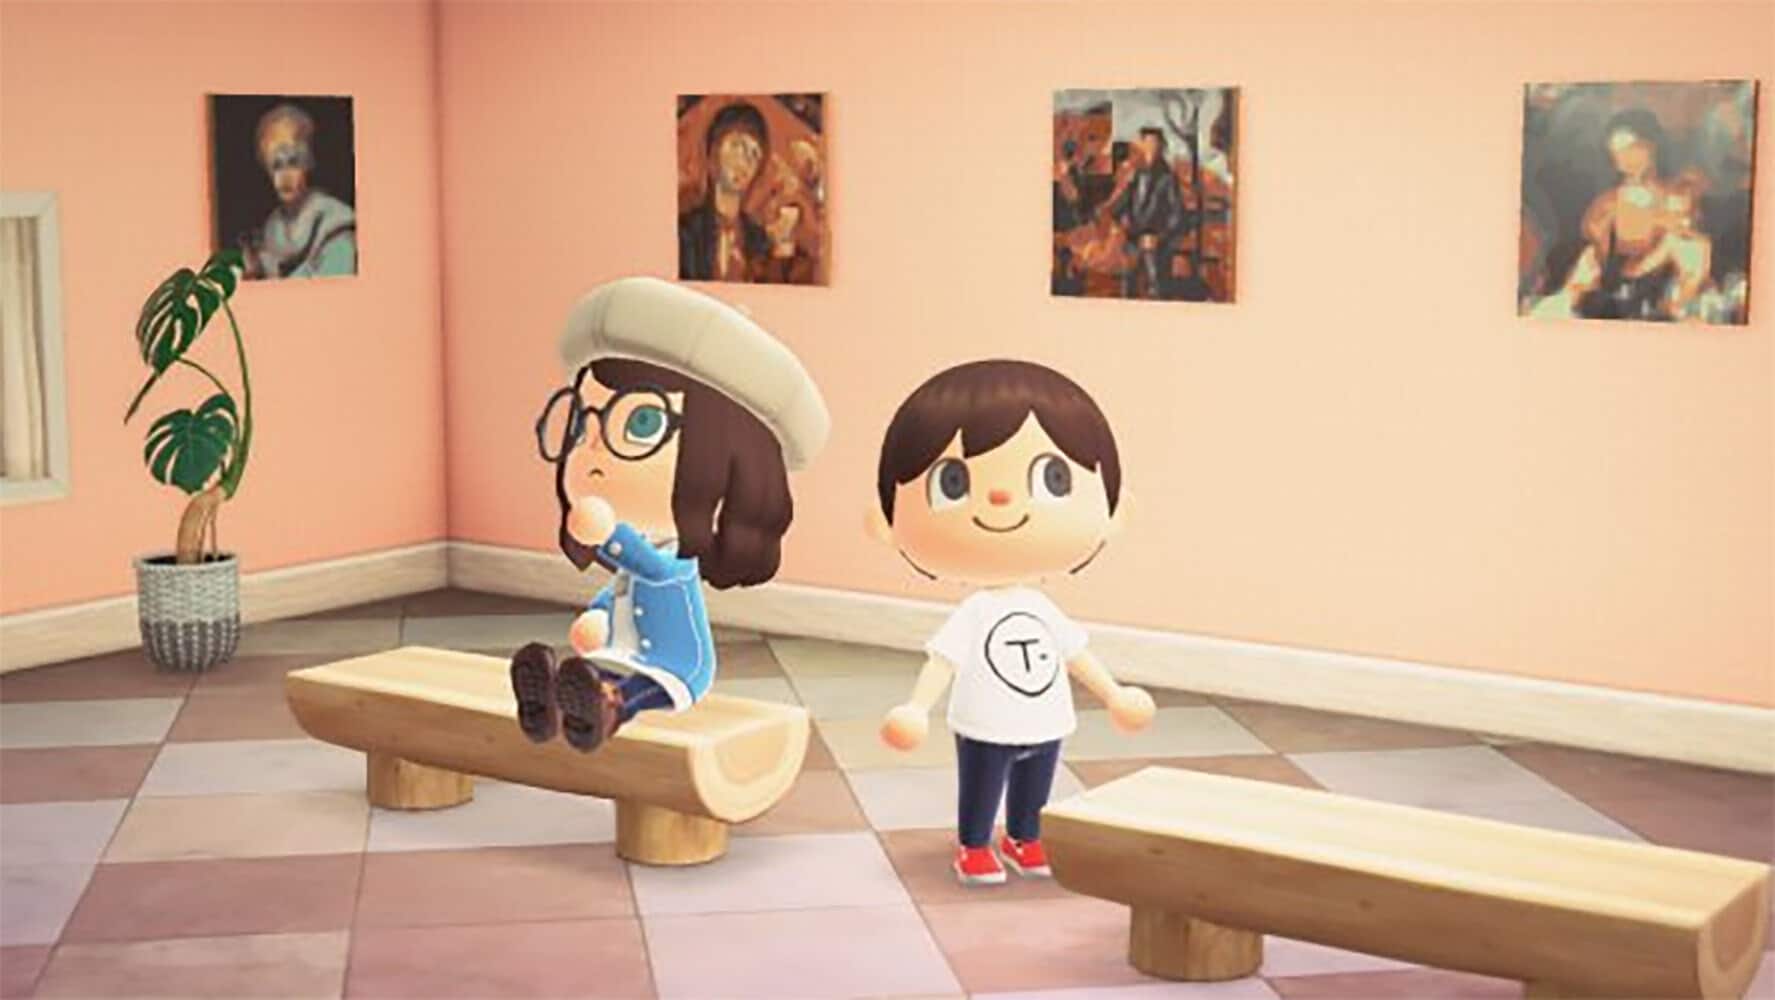 Descubre el arte del Museo Thyssen-Bornemisza con esta iniciativa en Animal Crossing: New Horizons